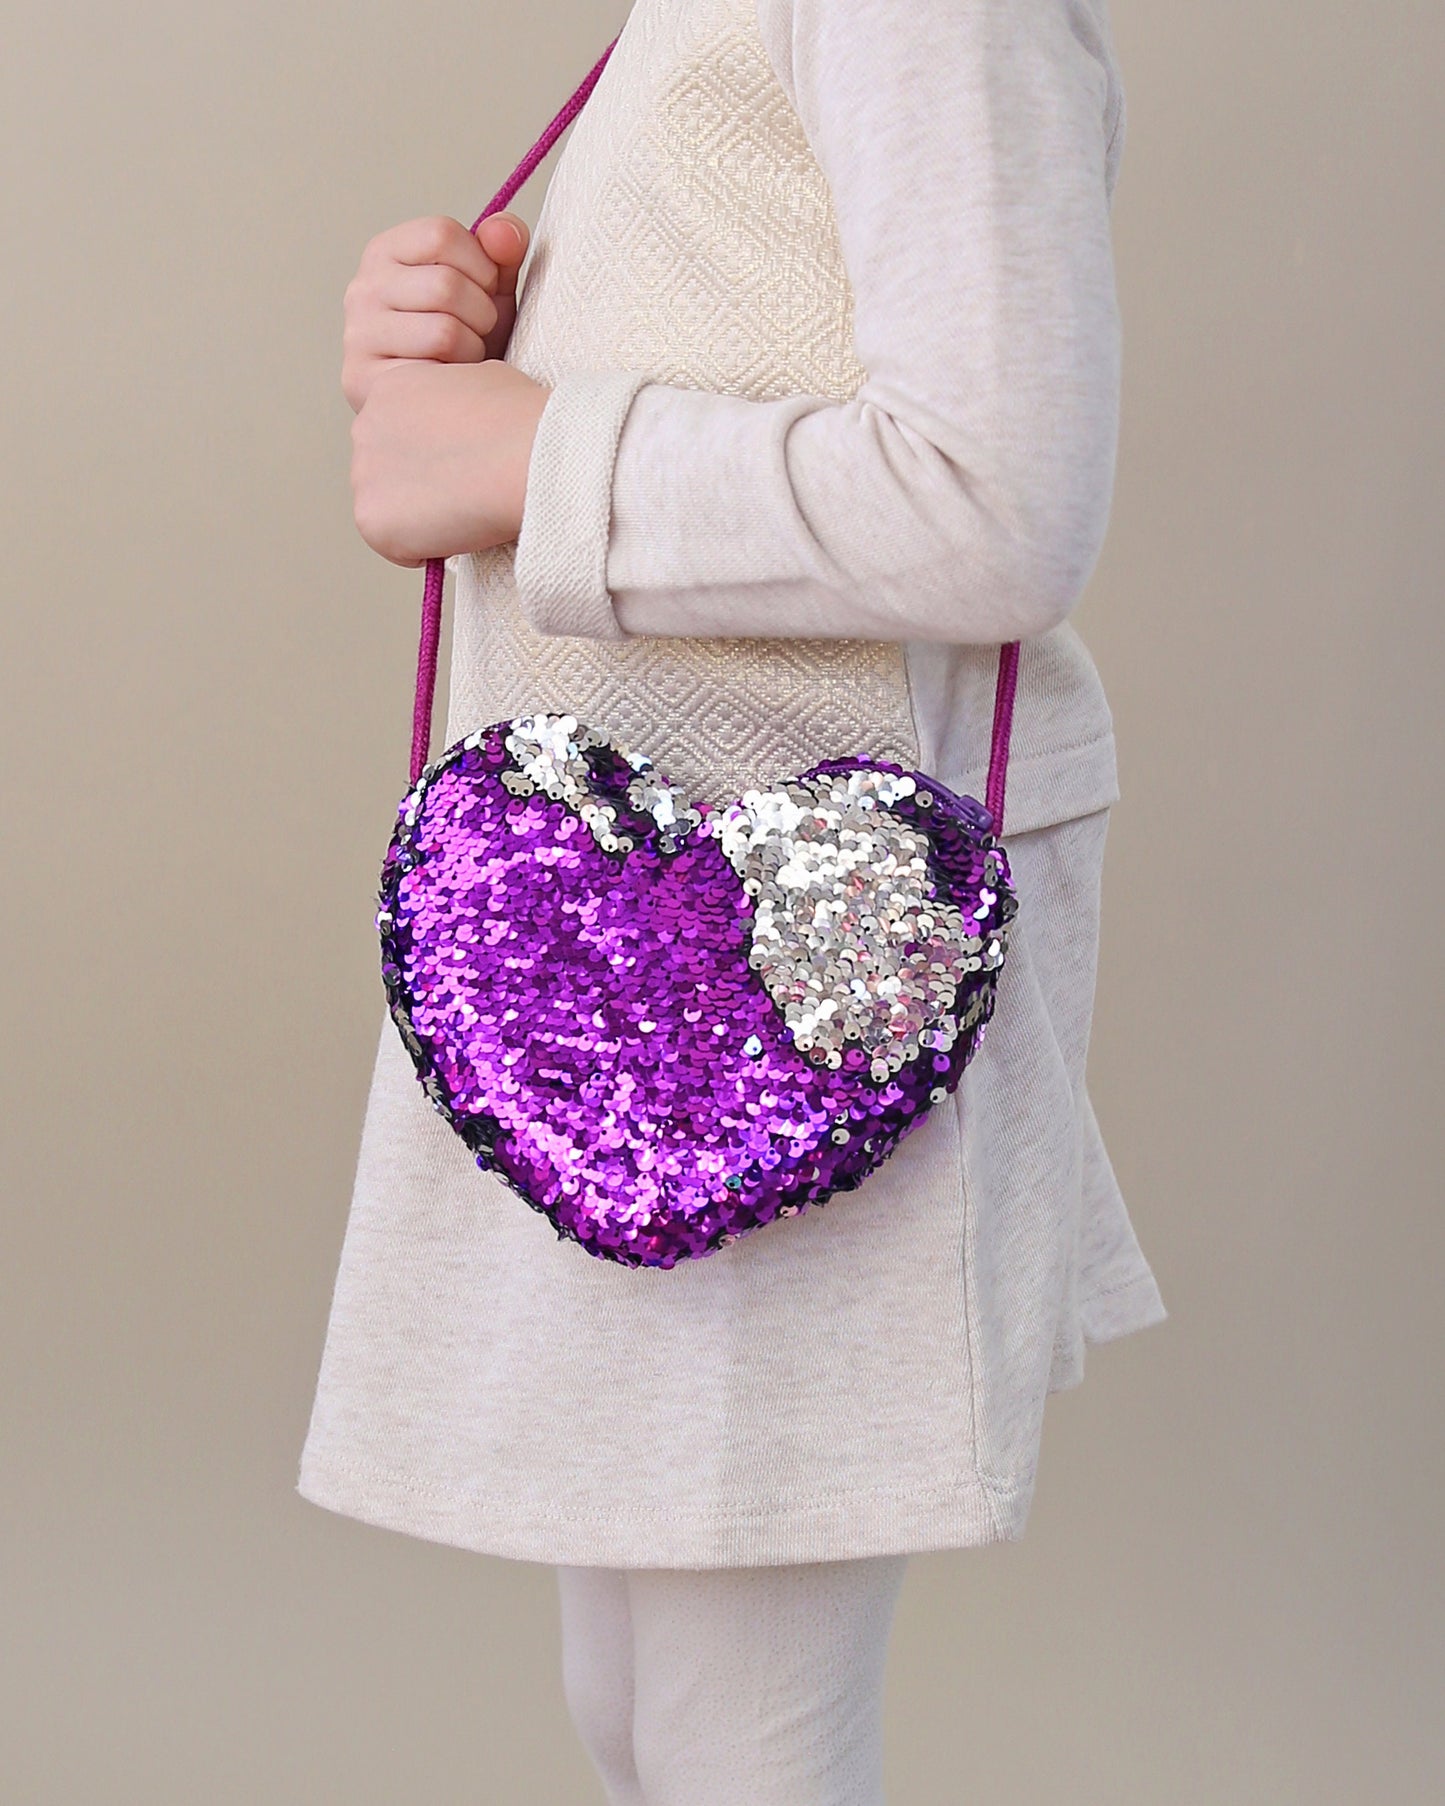 Heart Sequin Purse - Flip Sequin Heart Bag - Girls Heart Purse - Purple and Silver Heart Bag